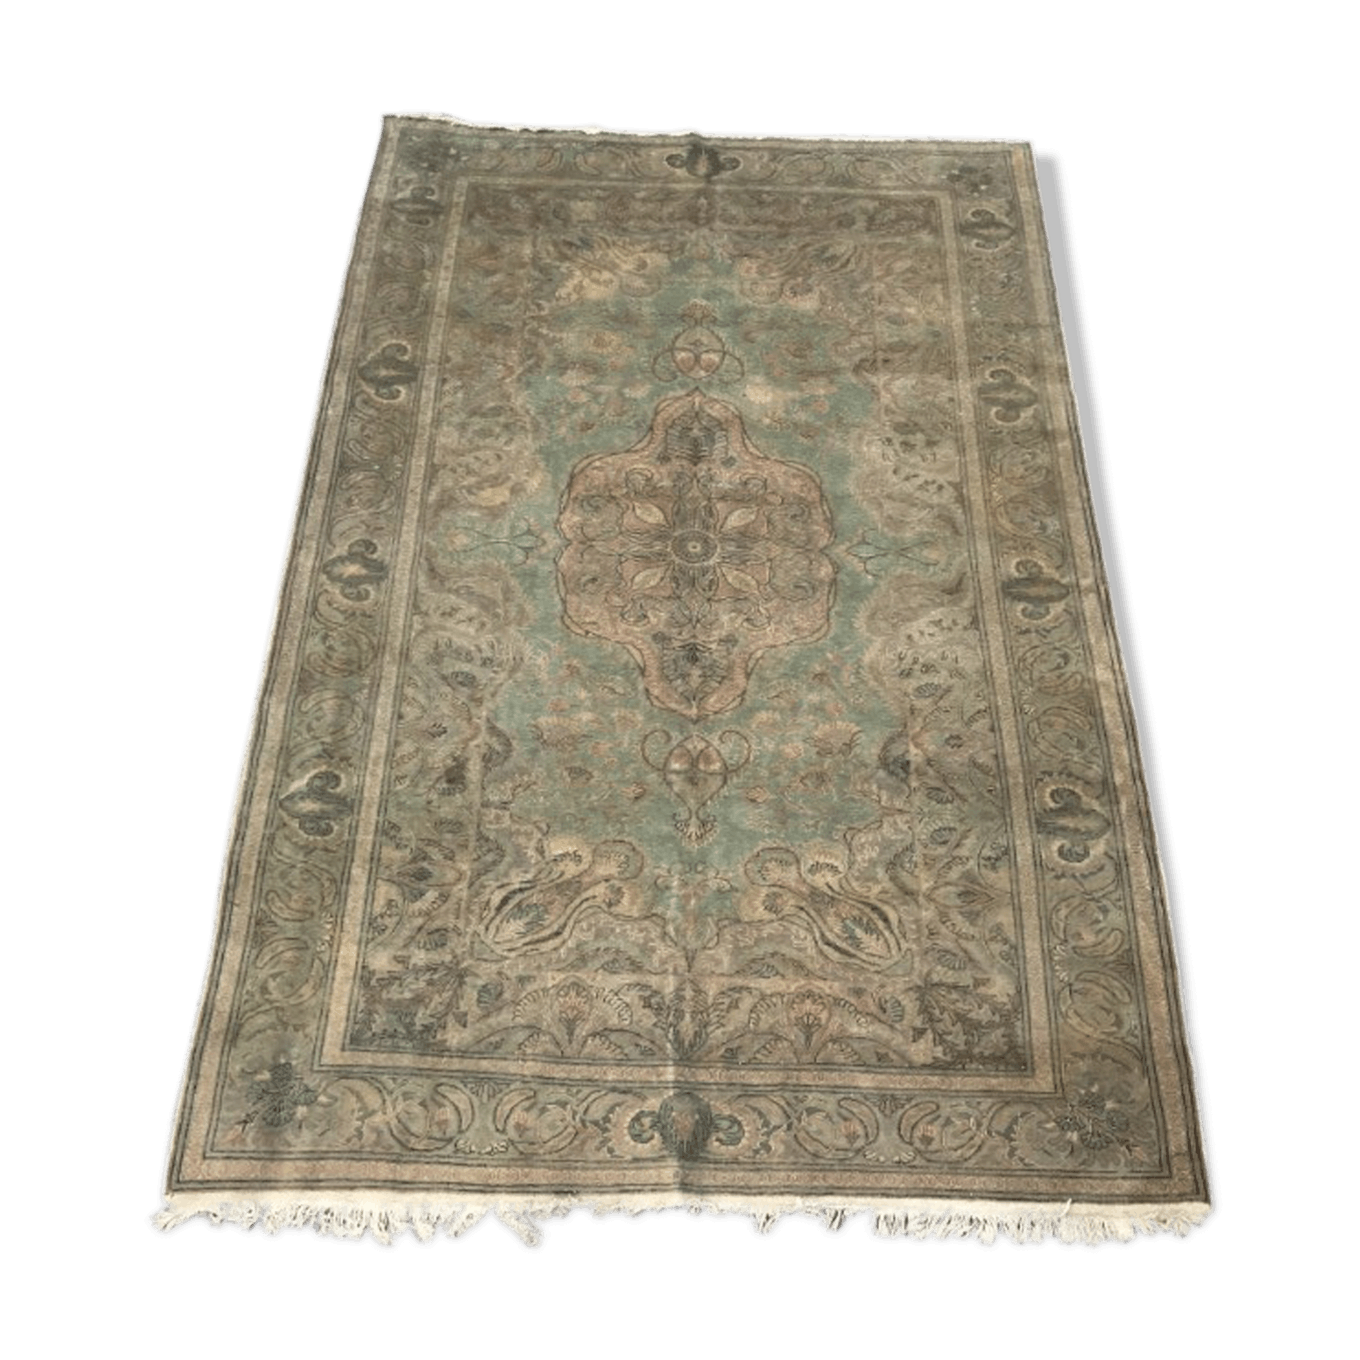 Antique turkish rug